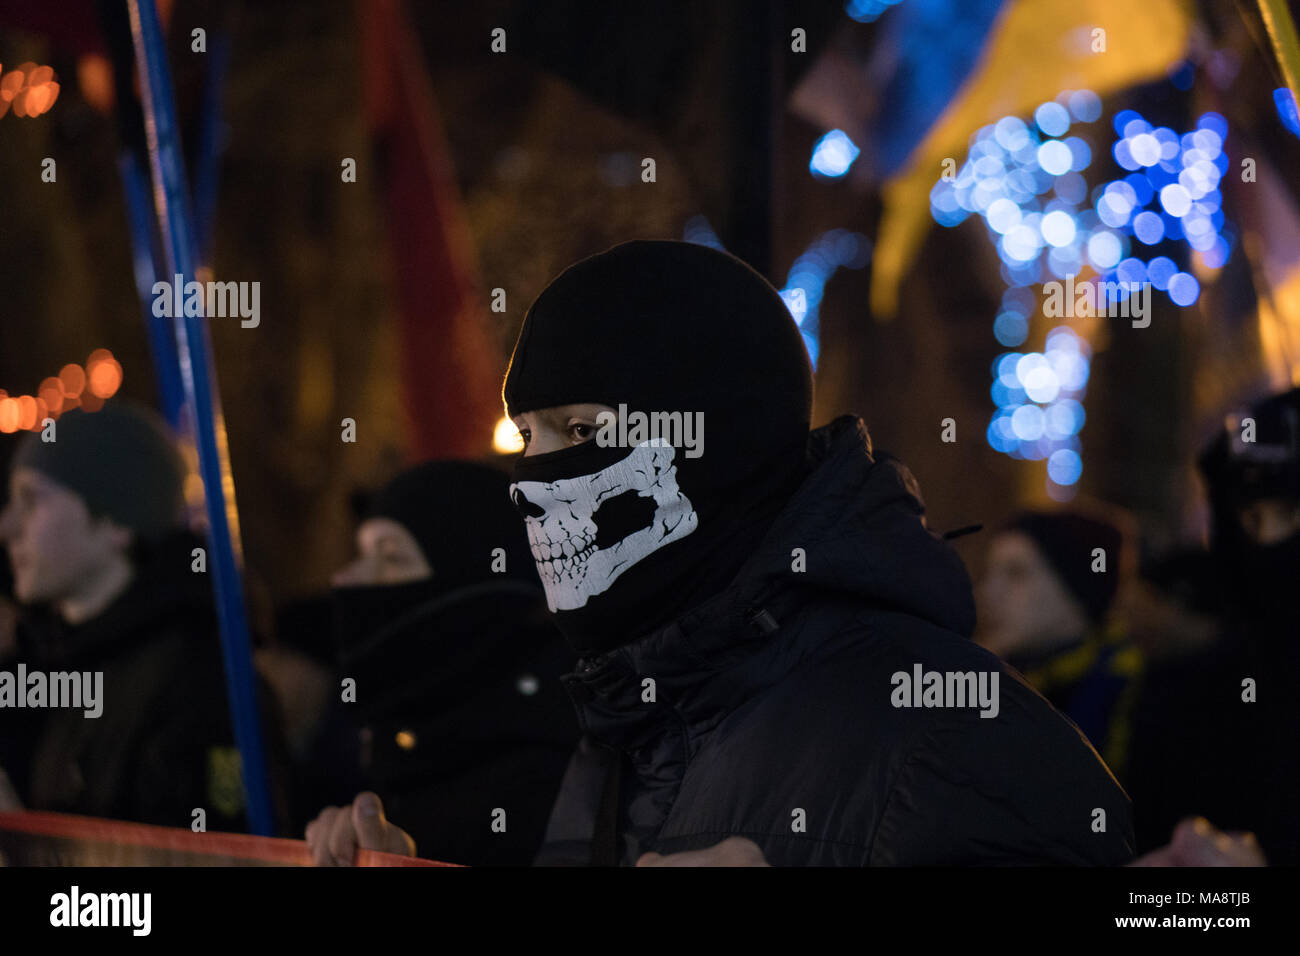 ODESSA, Ucraina - 30 Gennaio 2018: persone in maschera dimostrando civile protesta pacifica durante uno stato di rivoluzione armata in Ucraina. Il movimento della colonna di dimostranti al rally sulle strade Foto Stock